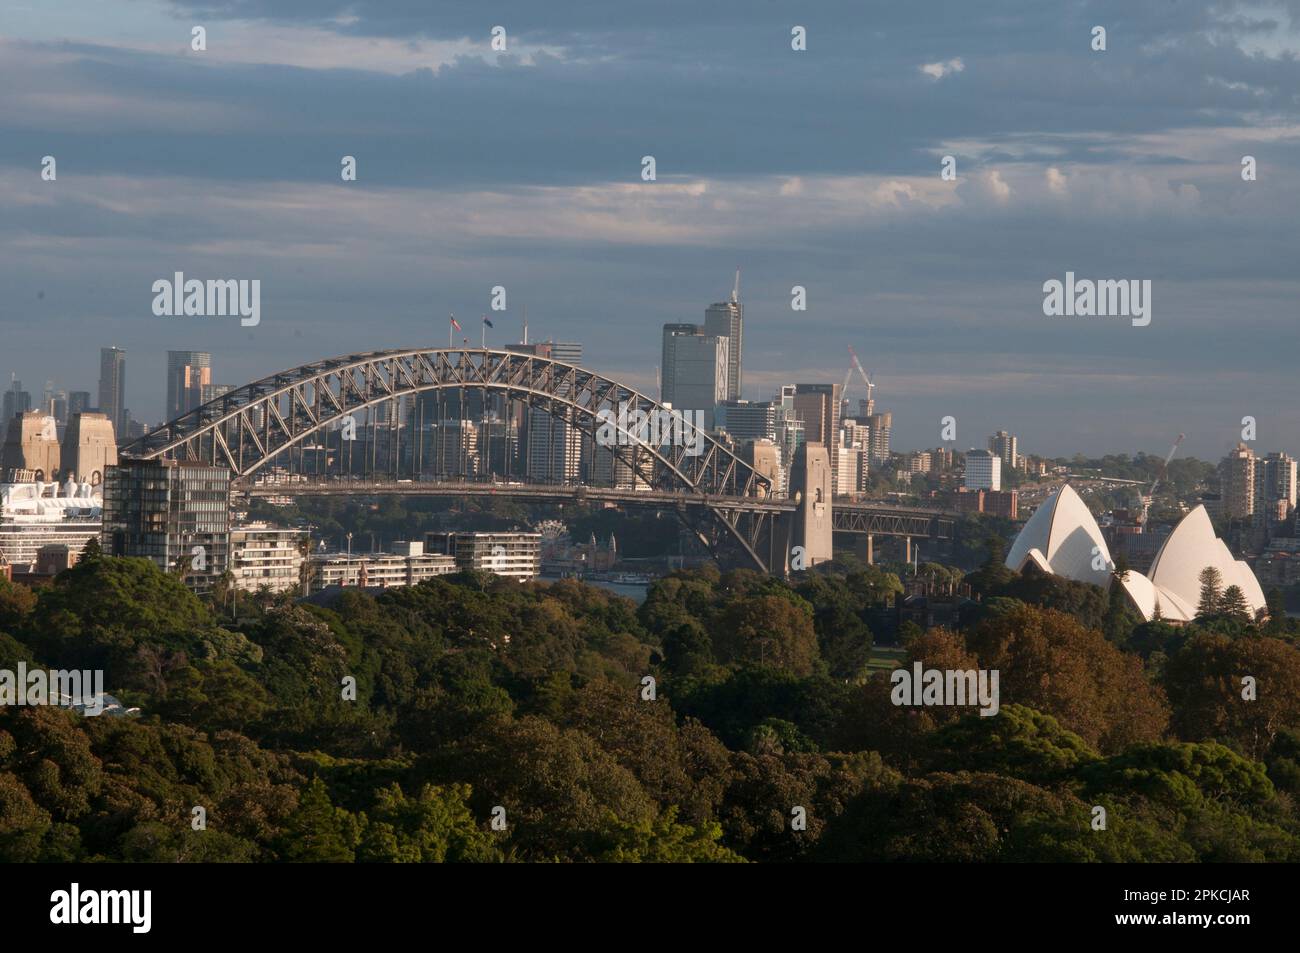 Vue sur le toit du pont du port de Sydney et de l'Opéra, vue à l'ouest depuis Woolloomooloo, sur le jardin botanique royal, Nouvelle-Galles du Sud, Australie Banque D'Images